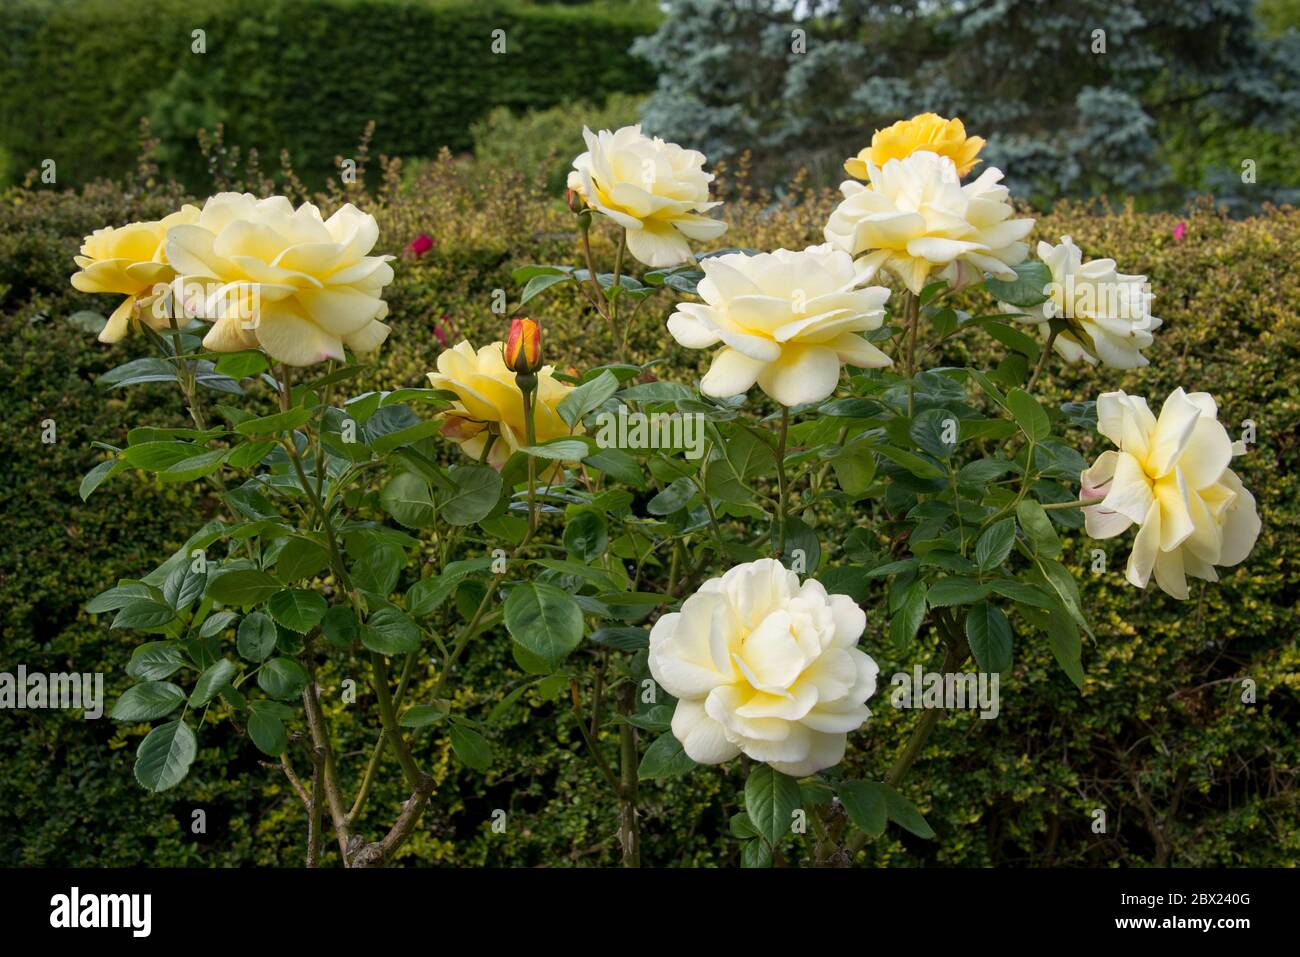 Eine duftende gelbe Standardrose, Rosa 'Arthur Bell', junge Blüten, die sich leuchtend gelb öffnen und im Alter zu hellgelb werden, Berkshire, Mai Stockfoto